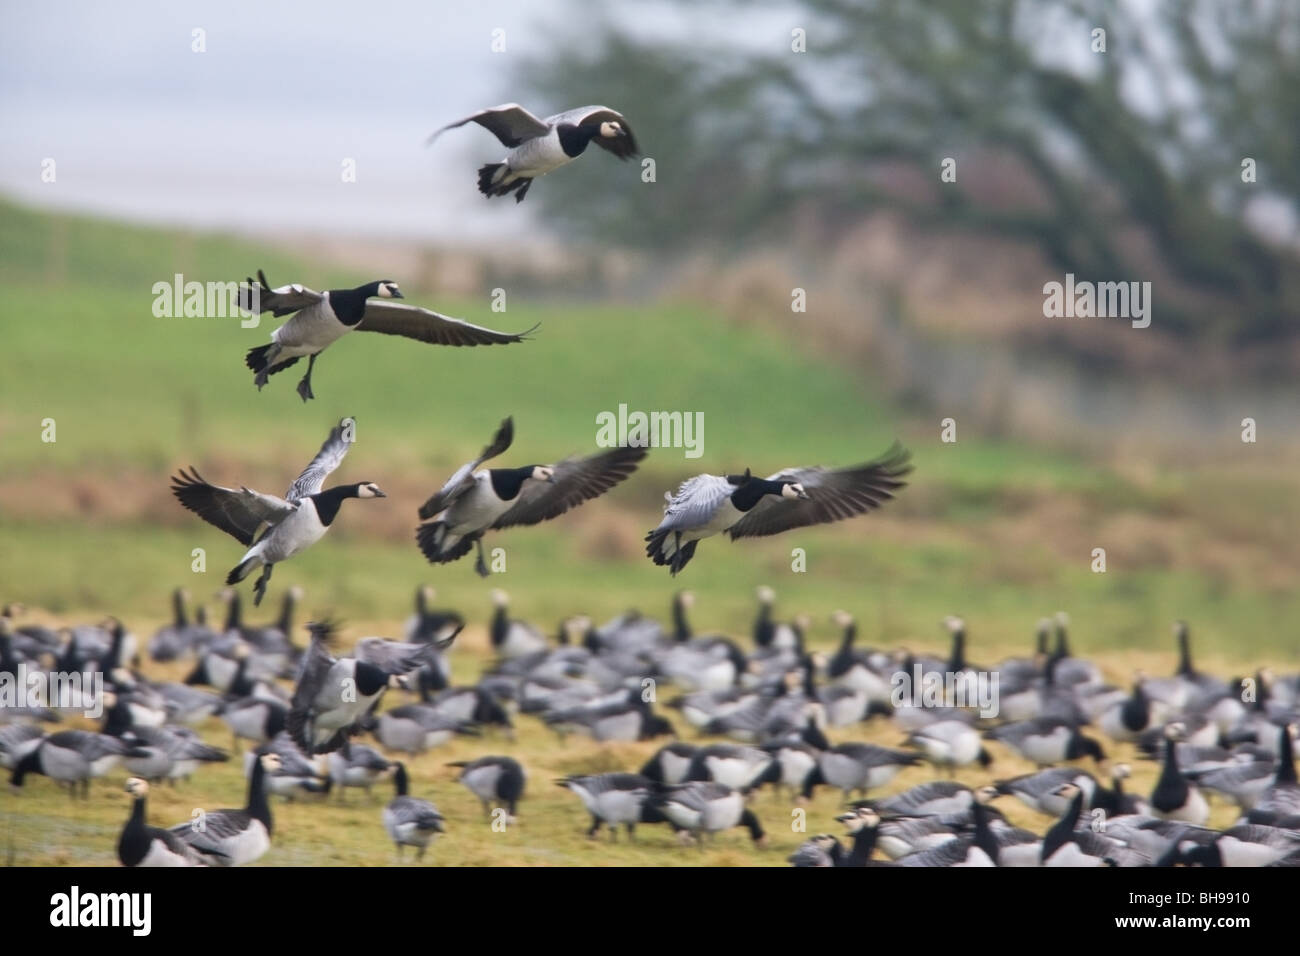 Barnacle Goose Branta leucopsis gregge sulla terra con cinque uccelli in volo e atterraggio Foto Stock